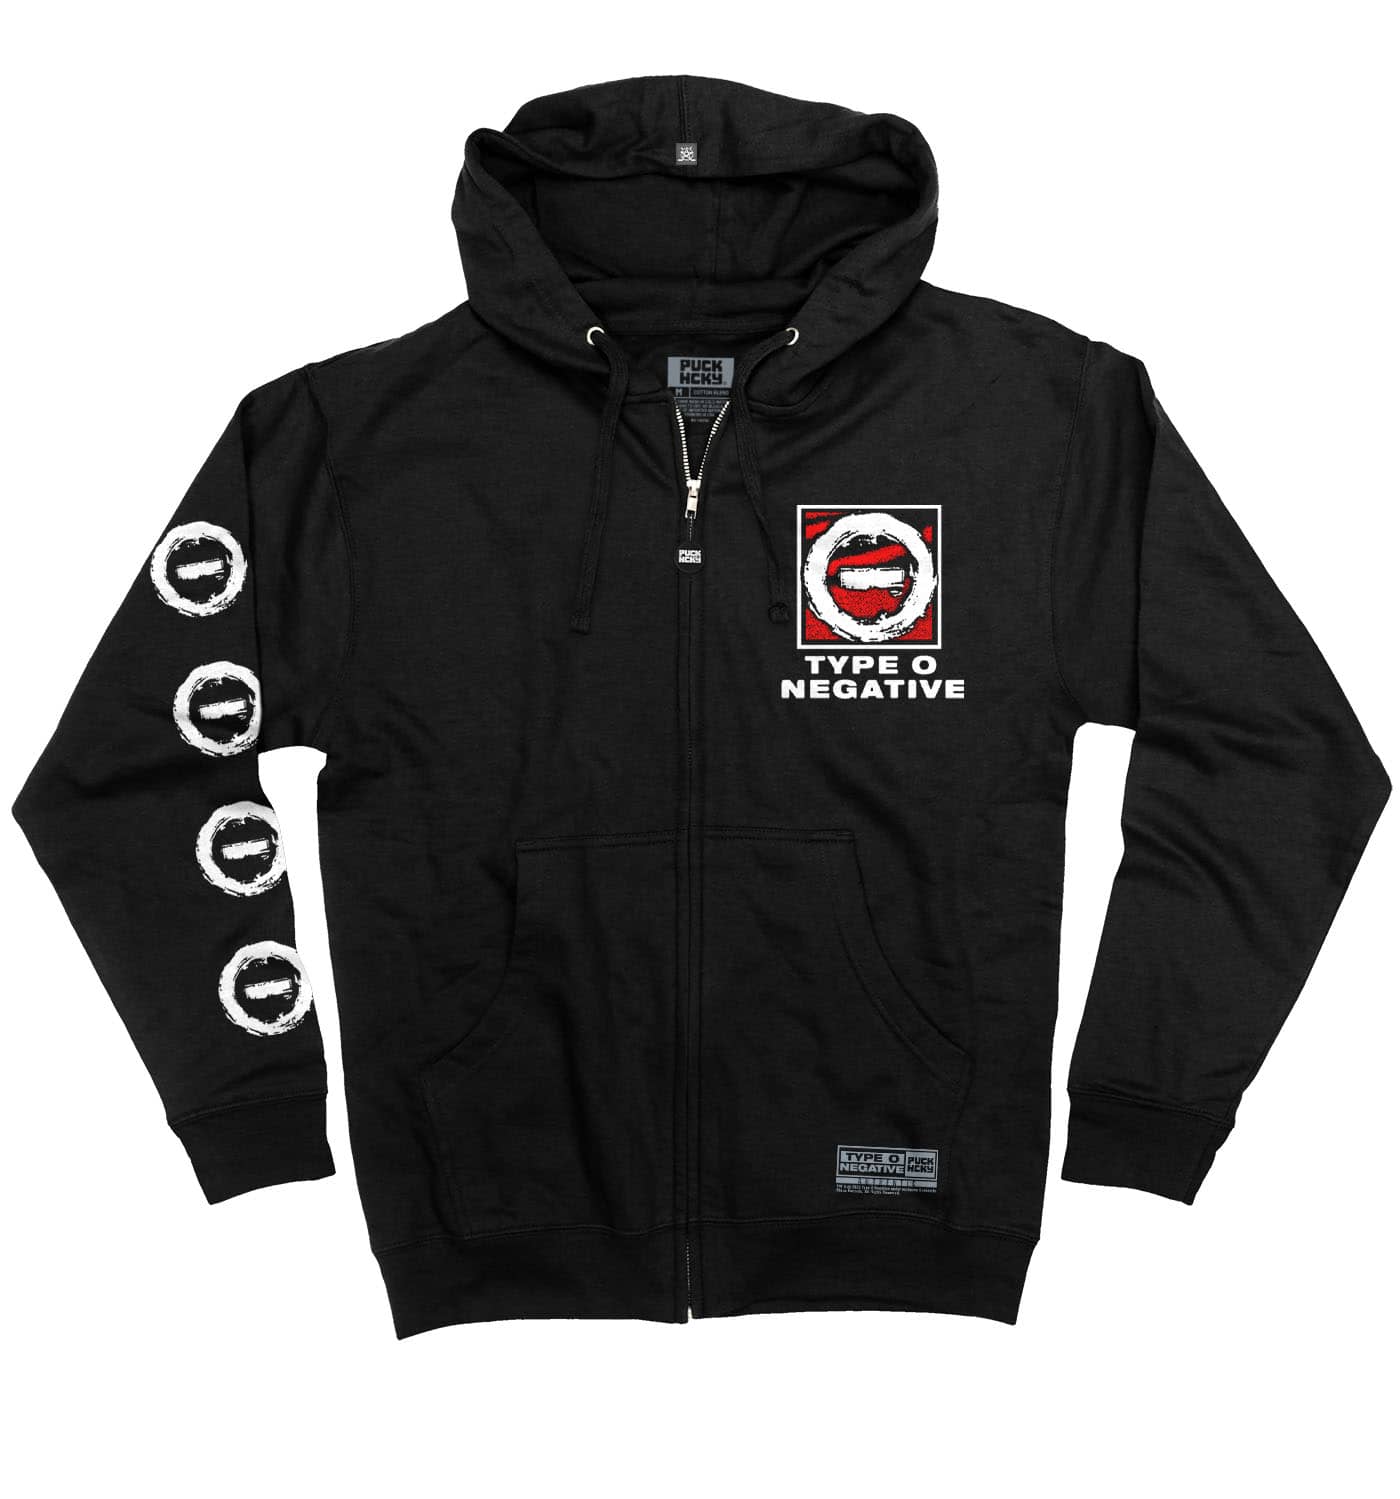 TYPE O NEGATIVE 'DISCOG' full zip hockey hoodie in black front view